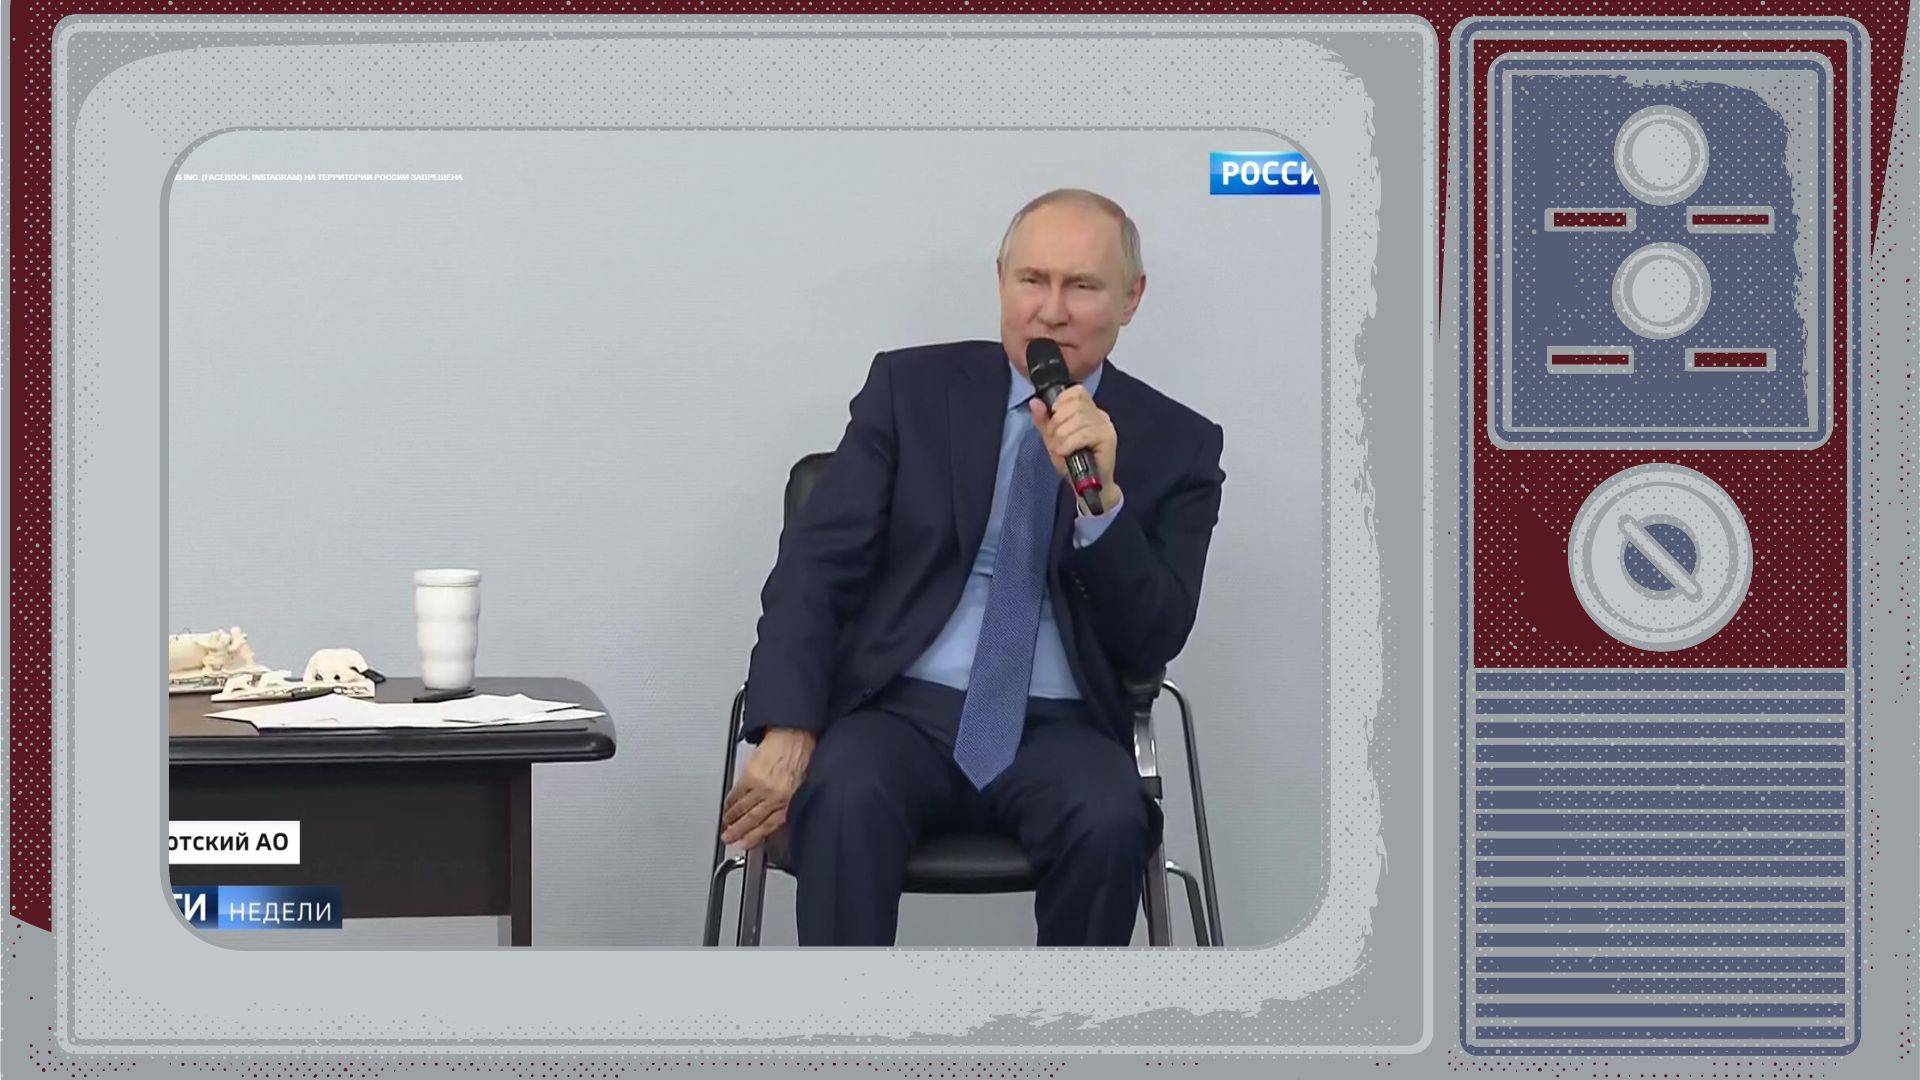 Grafika: w ramce starefo telewizora zdjęcie Putina mówiącego do mikrofonu i kurczowo trzymającego się krzesła